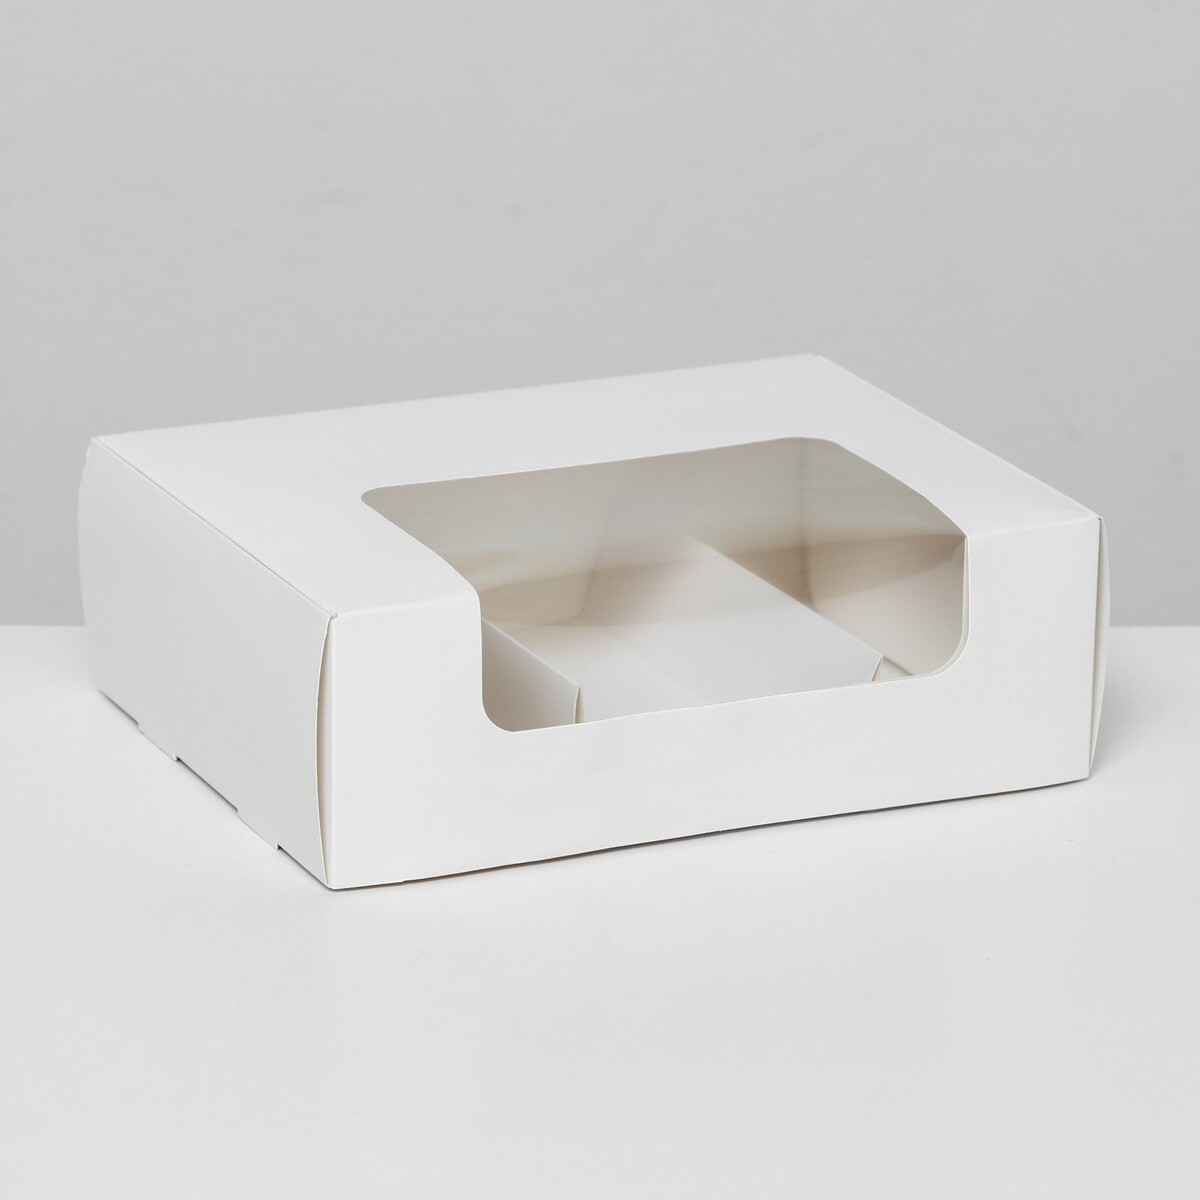 Коробка складная, под 3 эклера, белая, 20 x 15 x 6 см кондитерская складная коробка для 9 капкейков белая 23 5 x 23 x 14 см